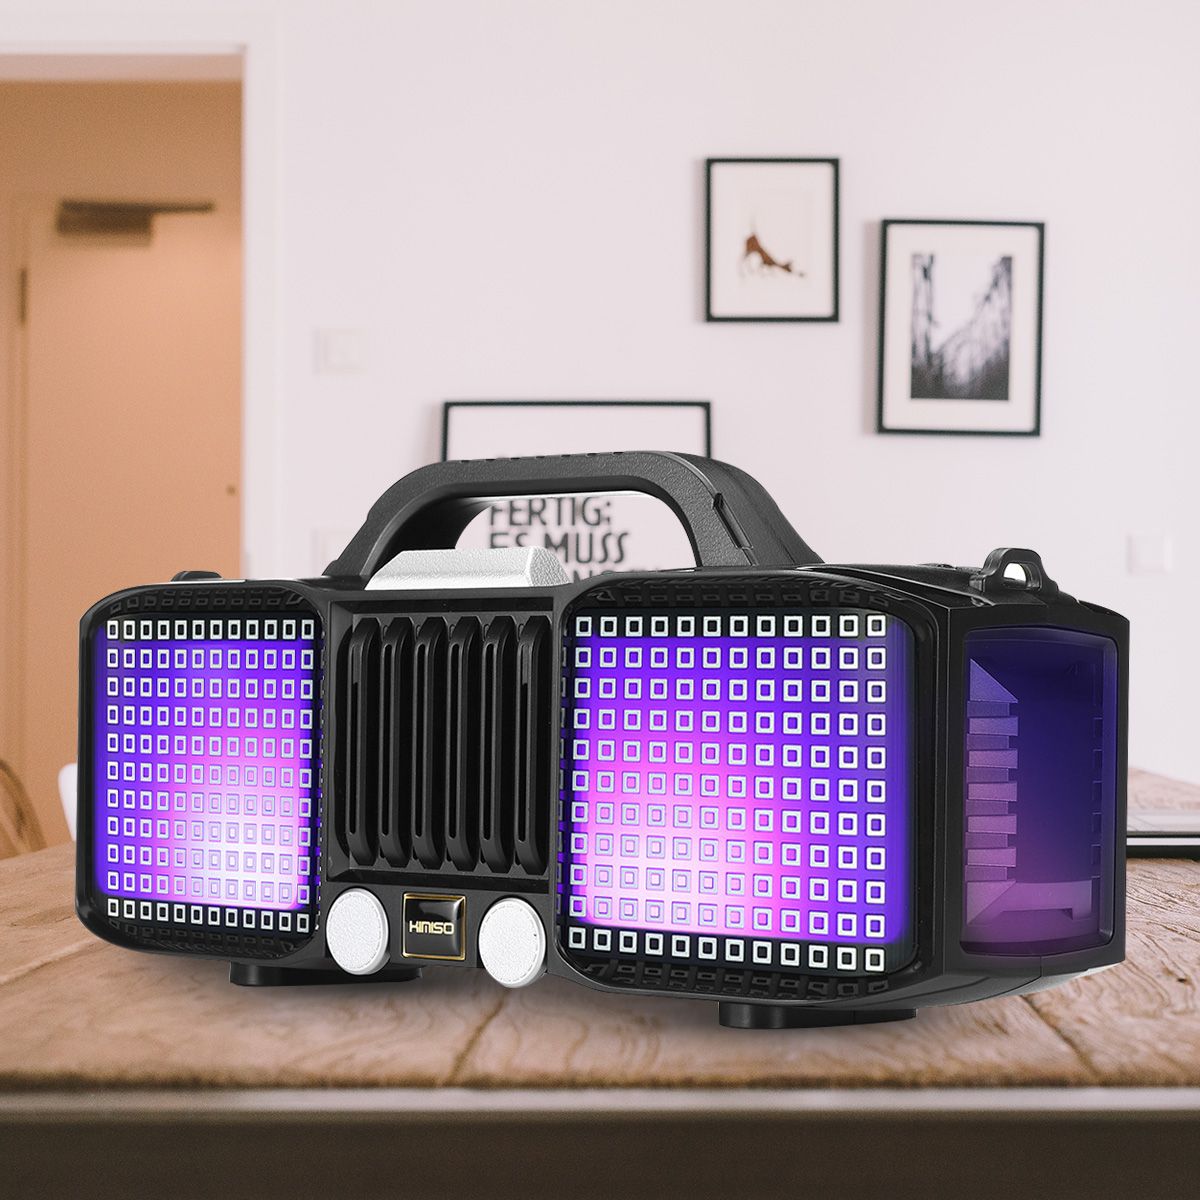 Portable-LED-Light-bluetooth-50-Speaker-Super-Bass-Multiple-Mode-Loudspeaker-with-Mic-1582011